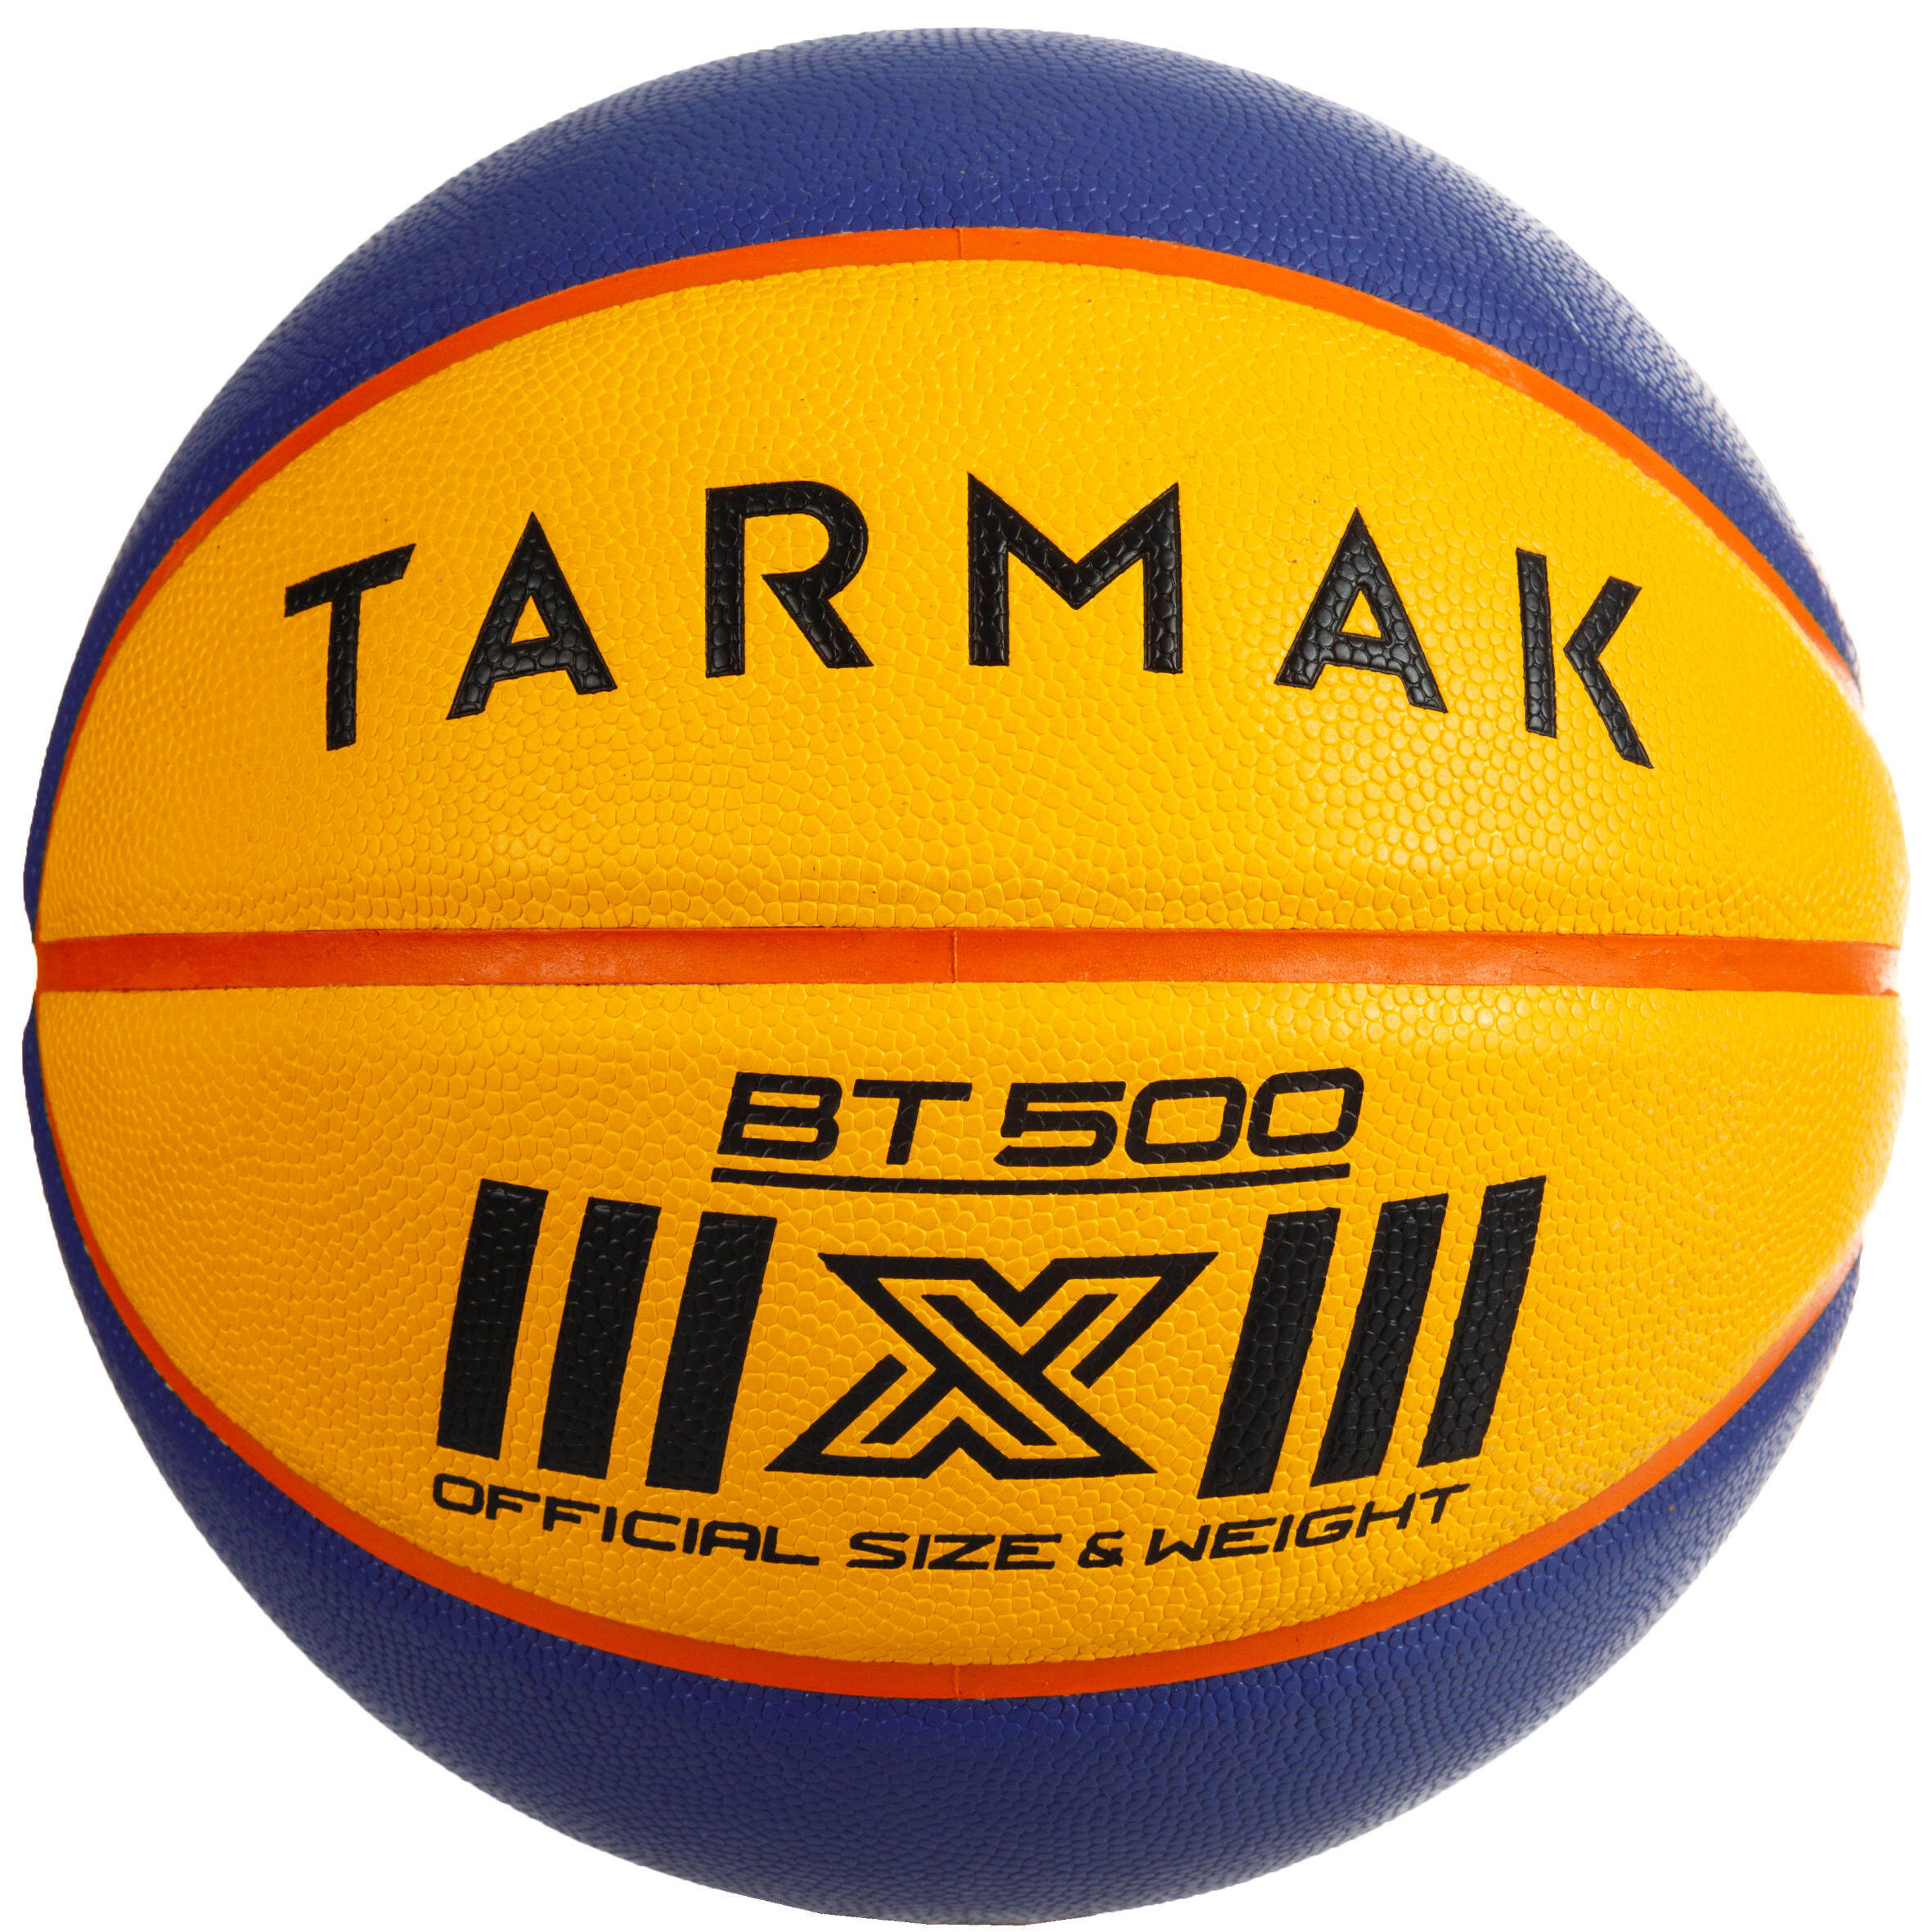 [ส่งฟรี ] ลูกบาสเกตบอล? เบอร์ 6 ให้สัมผัสที่ยอดเยี่ยมสำหรับเล่นแบบ 3 ต่อ 3 รุ่น BT500 มาตราฐาน FIBA สำหรับผู้ใหญ่ Basketball Ball ? BT500 3-on-3 BasketballExcellent ball feel. ลูกบาสเกตบอล 6 7